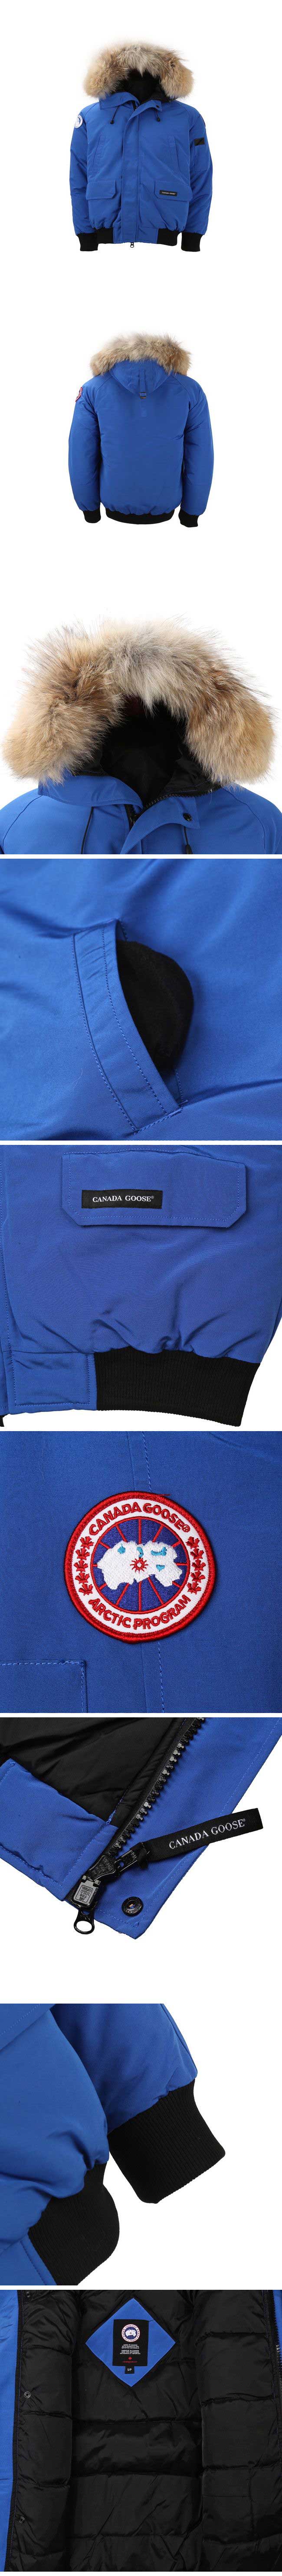 Canada Goose Chilliwack Down Jacket カナダグース チリワック ダウンジャケット ブルー